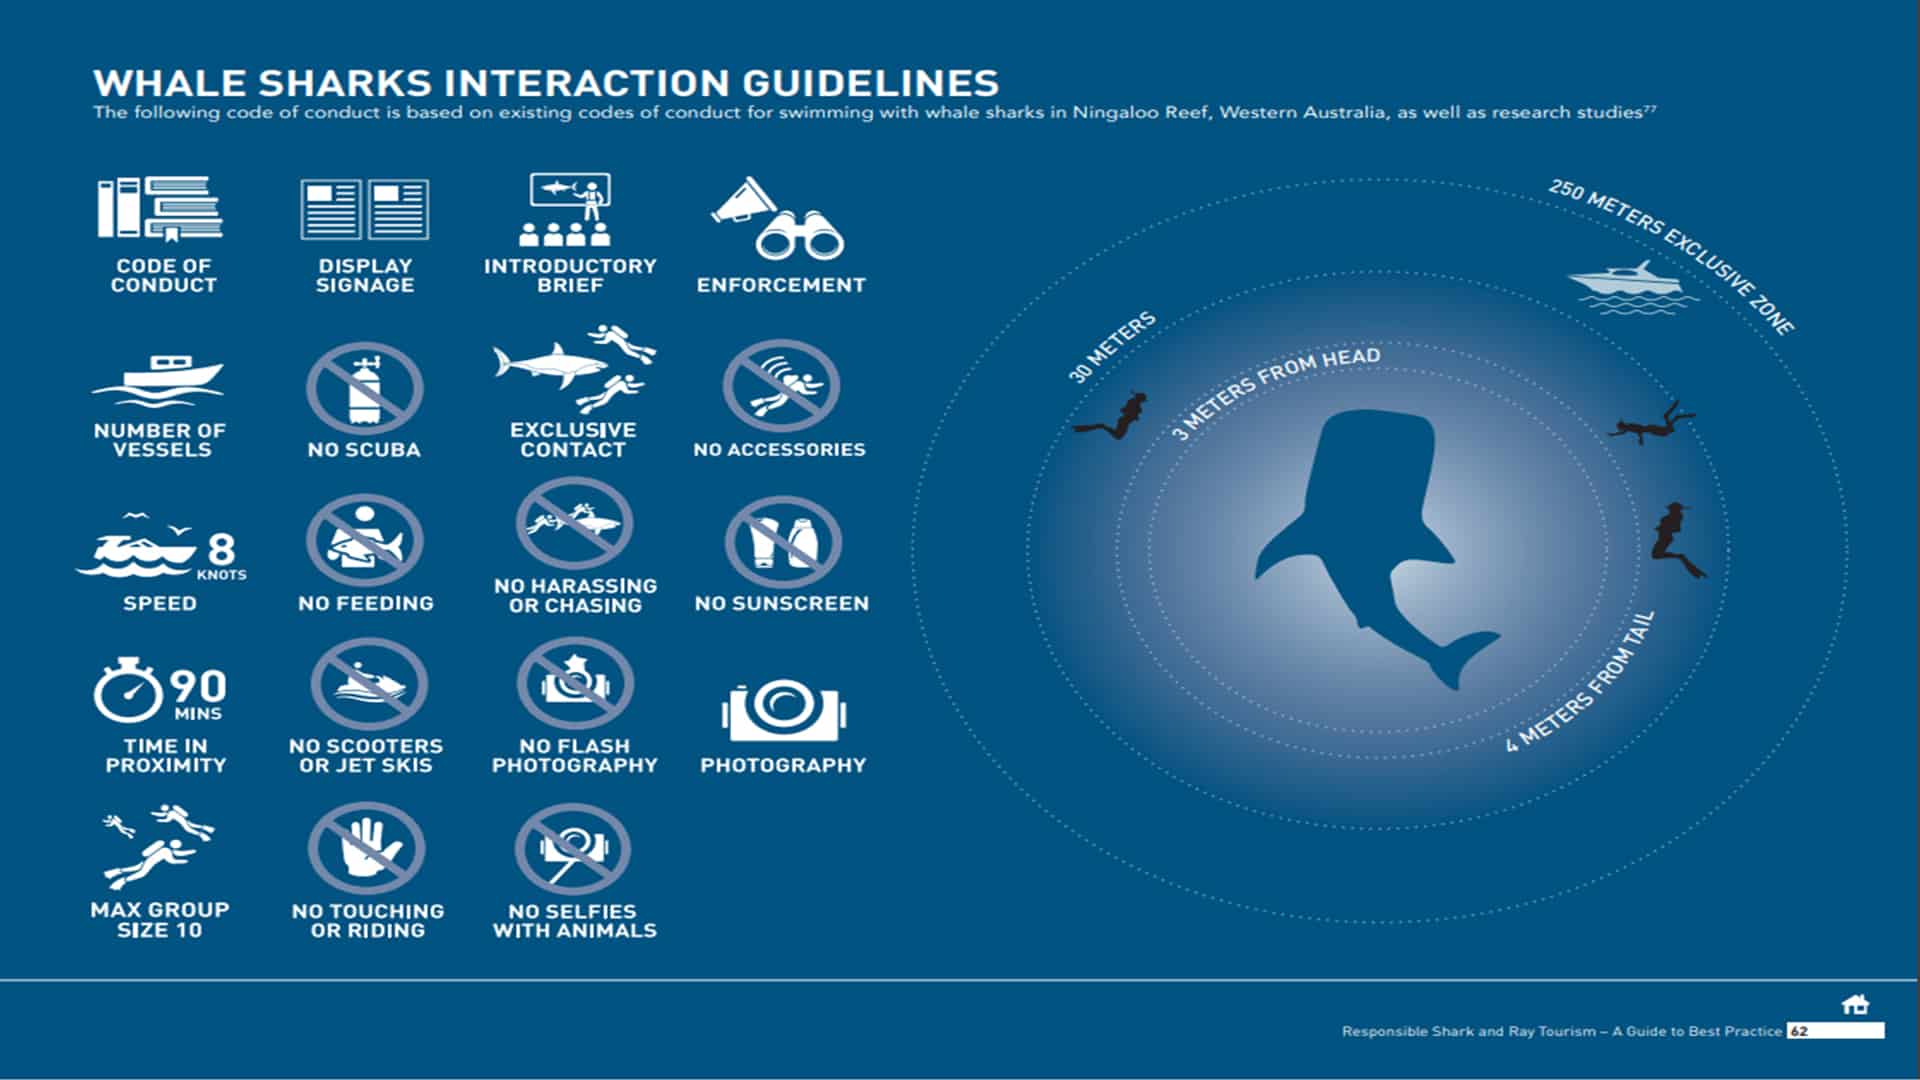 Nuotare Con Gli Squali Balena In Messico: La Guida Completa